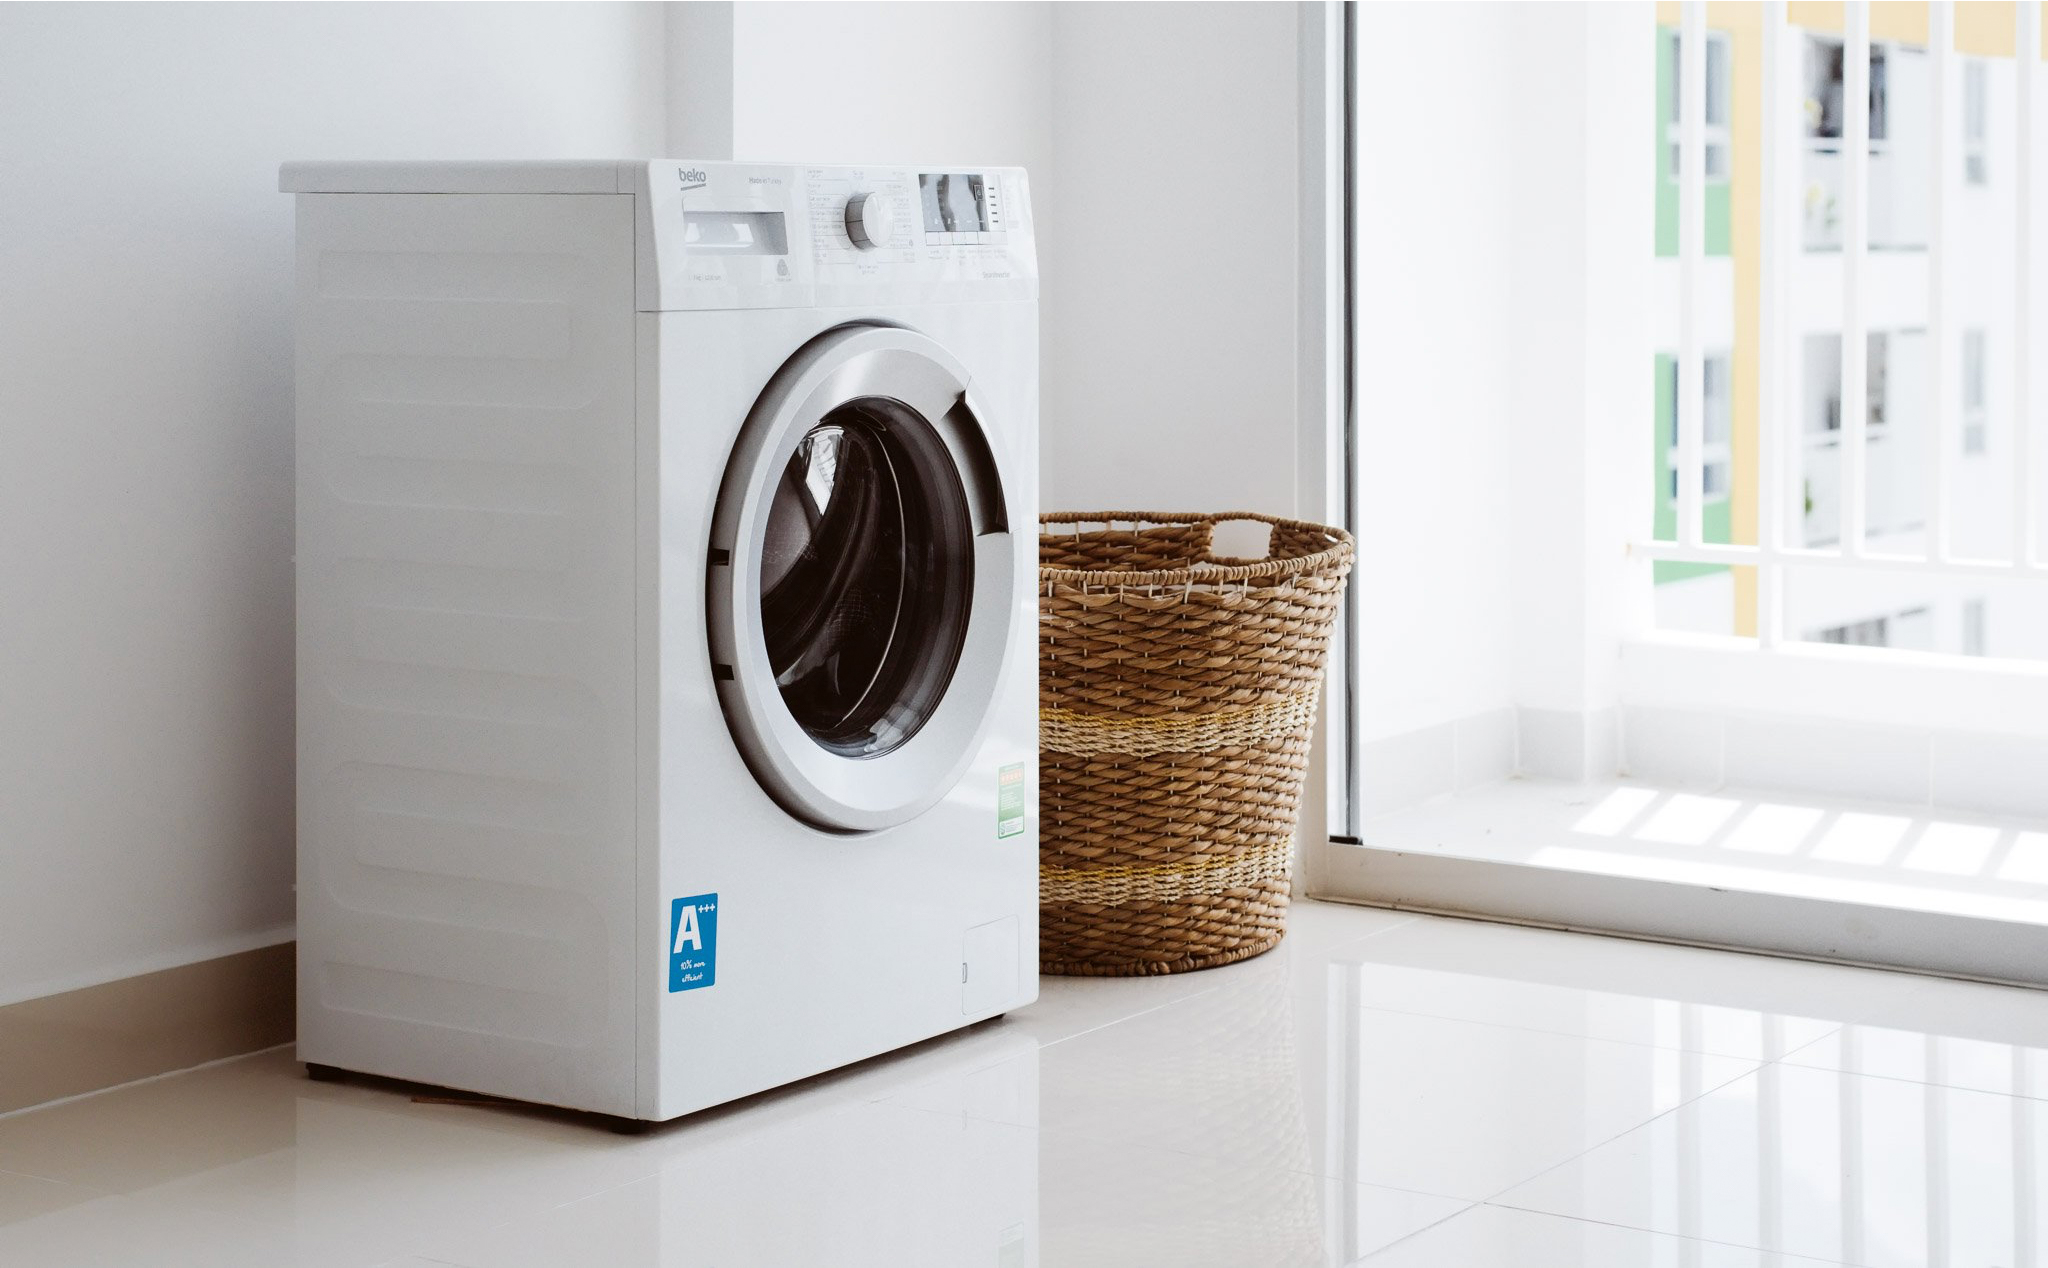 [Chia sẻ] 10 điểm cần lưu ý để sử dụng máy giặt hiệu quả hơn